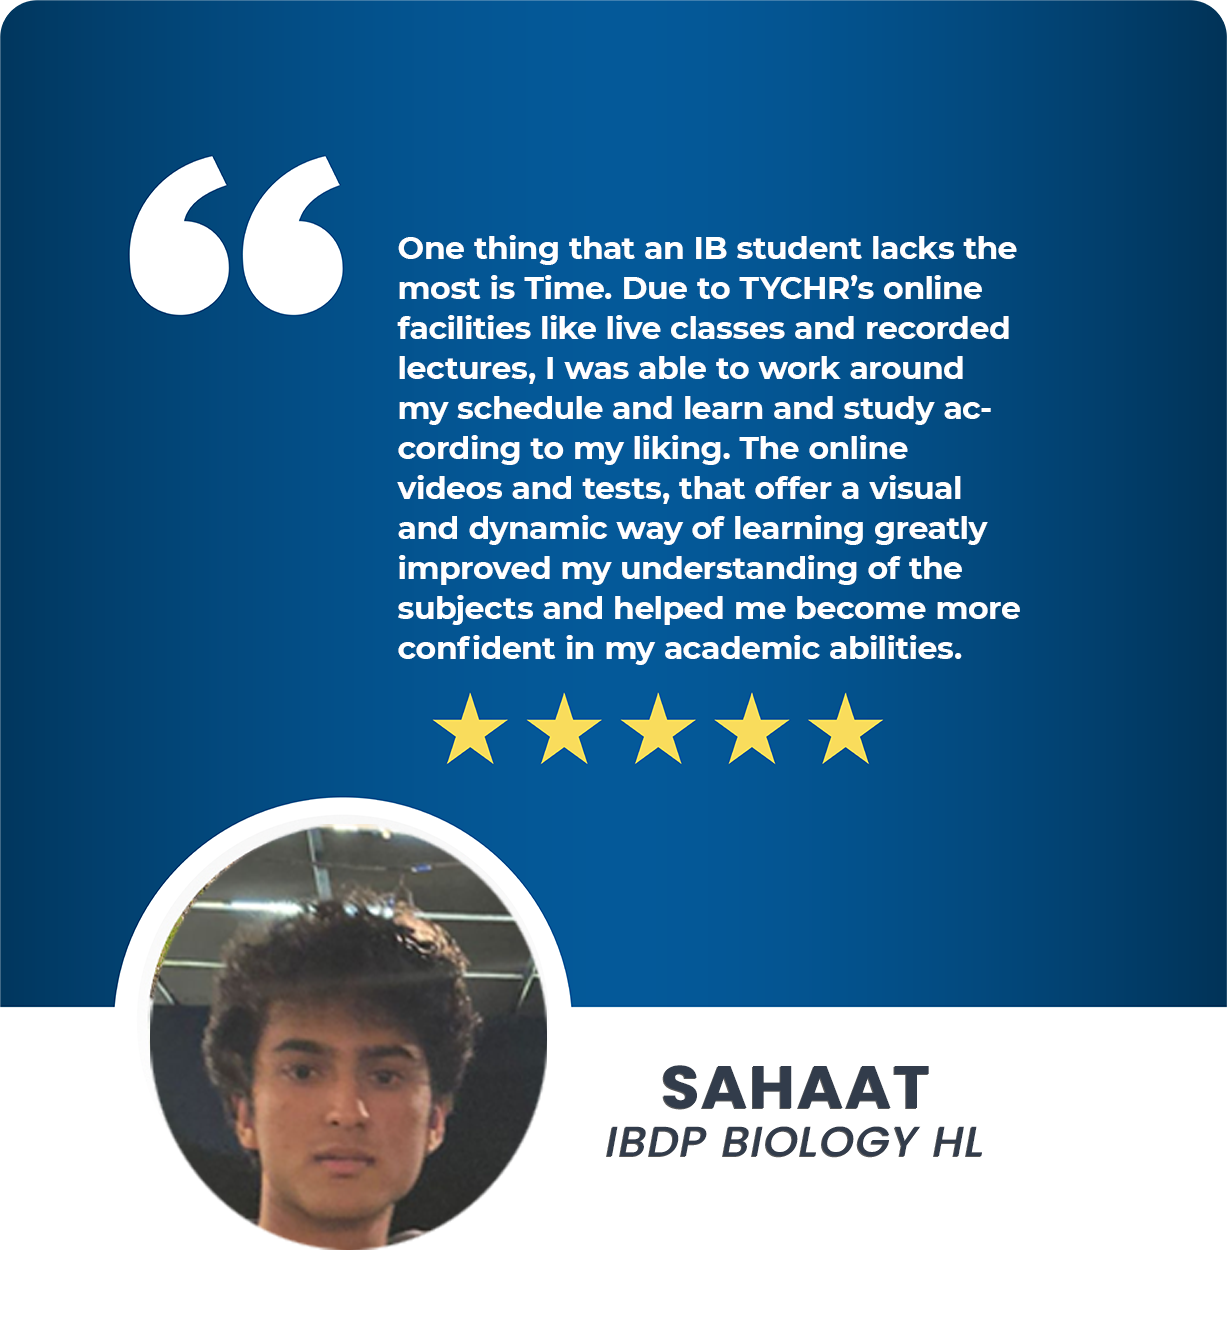 SAHAAT IB BIOLOGY HL